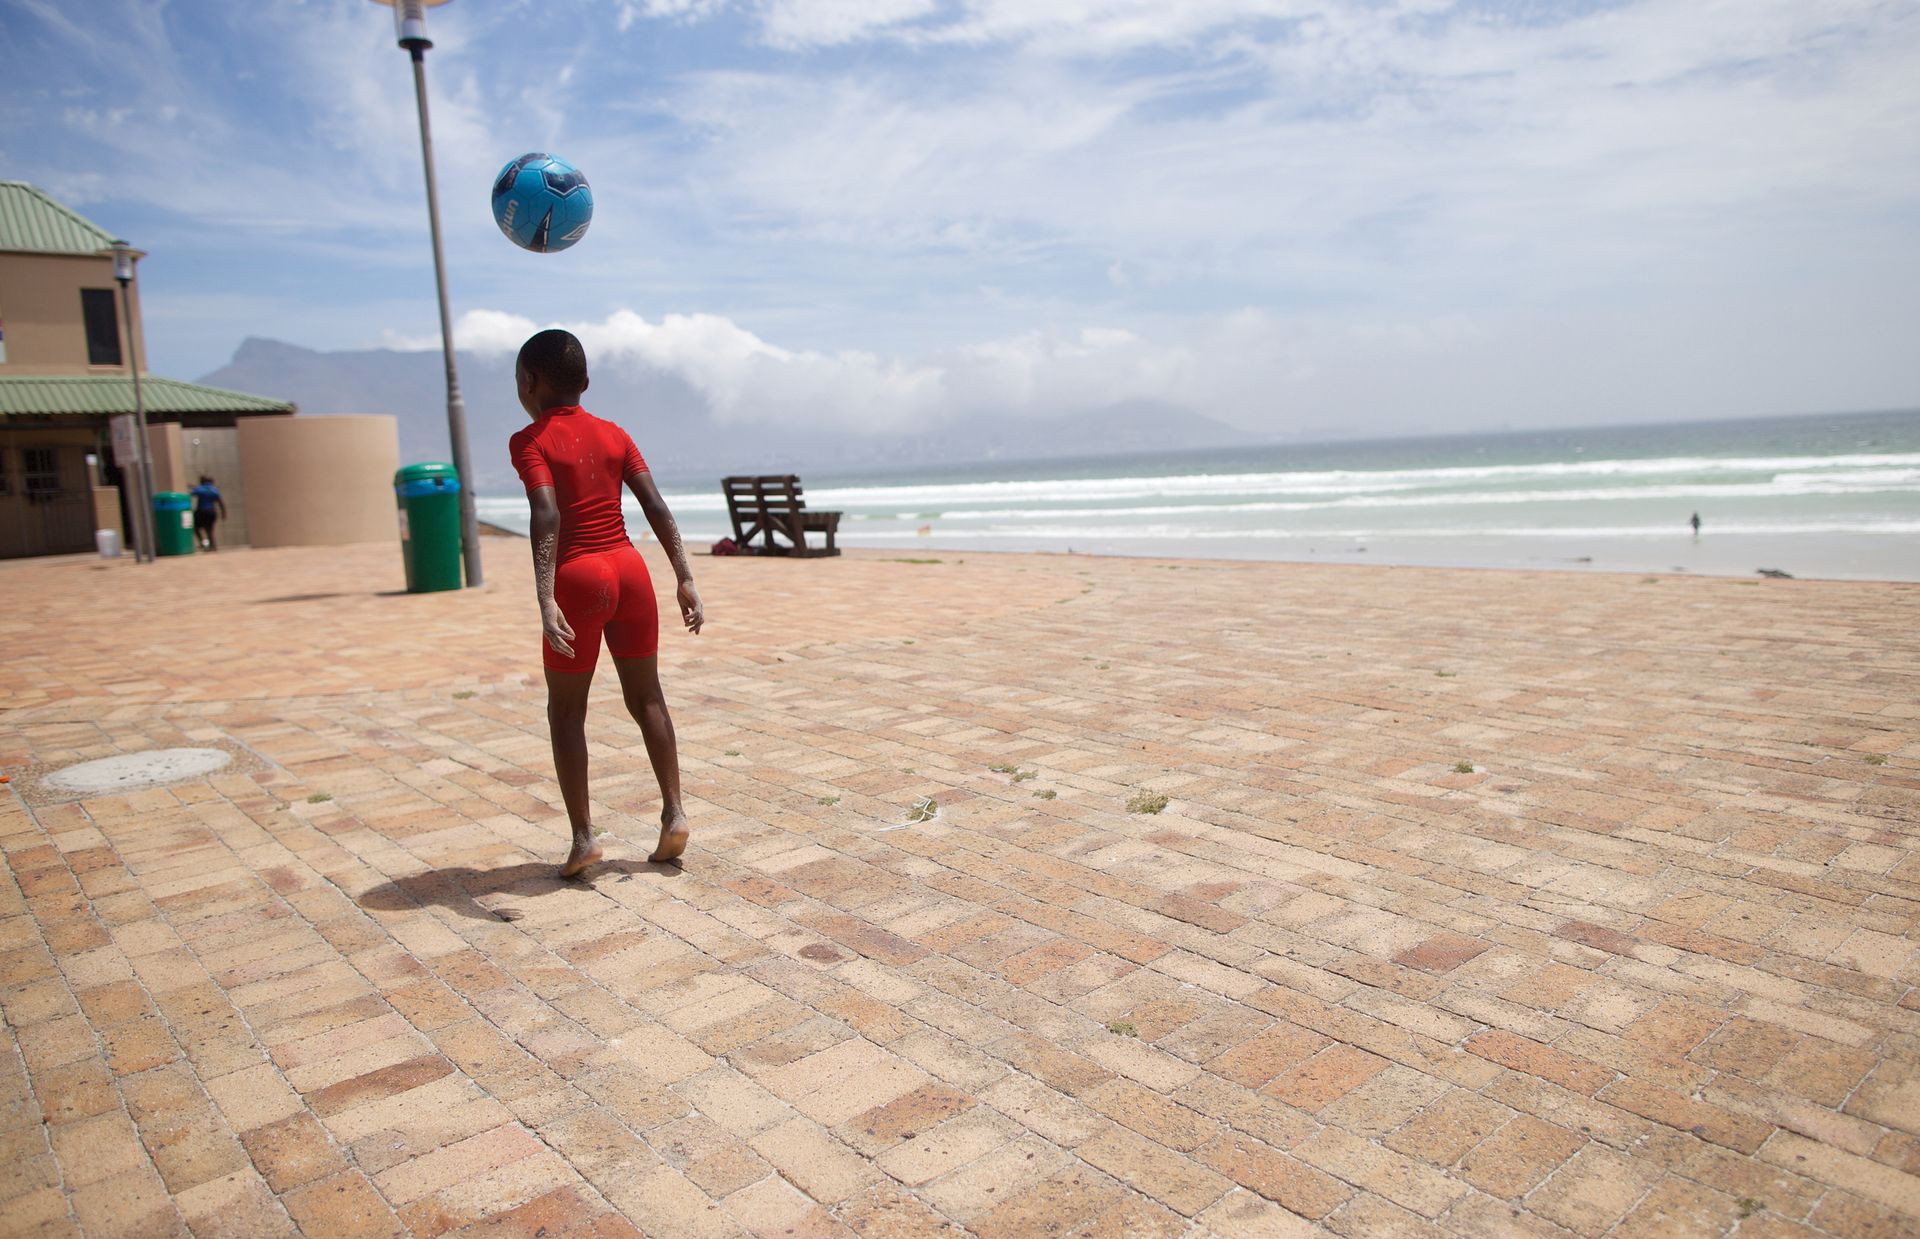 Tendai lässt einen Ball an seinem Kopf abprallen. Auf dieser Terrasse in Strandnähe hat er jede Menge Platz, um seine Fußballkünste zu vervollkommnen. In der Ferne ist der Tafelberg, ein Wahrzeichen Kapstadts, zu sehen.